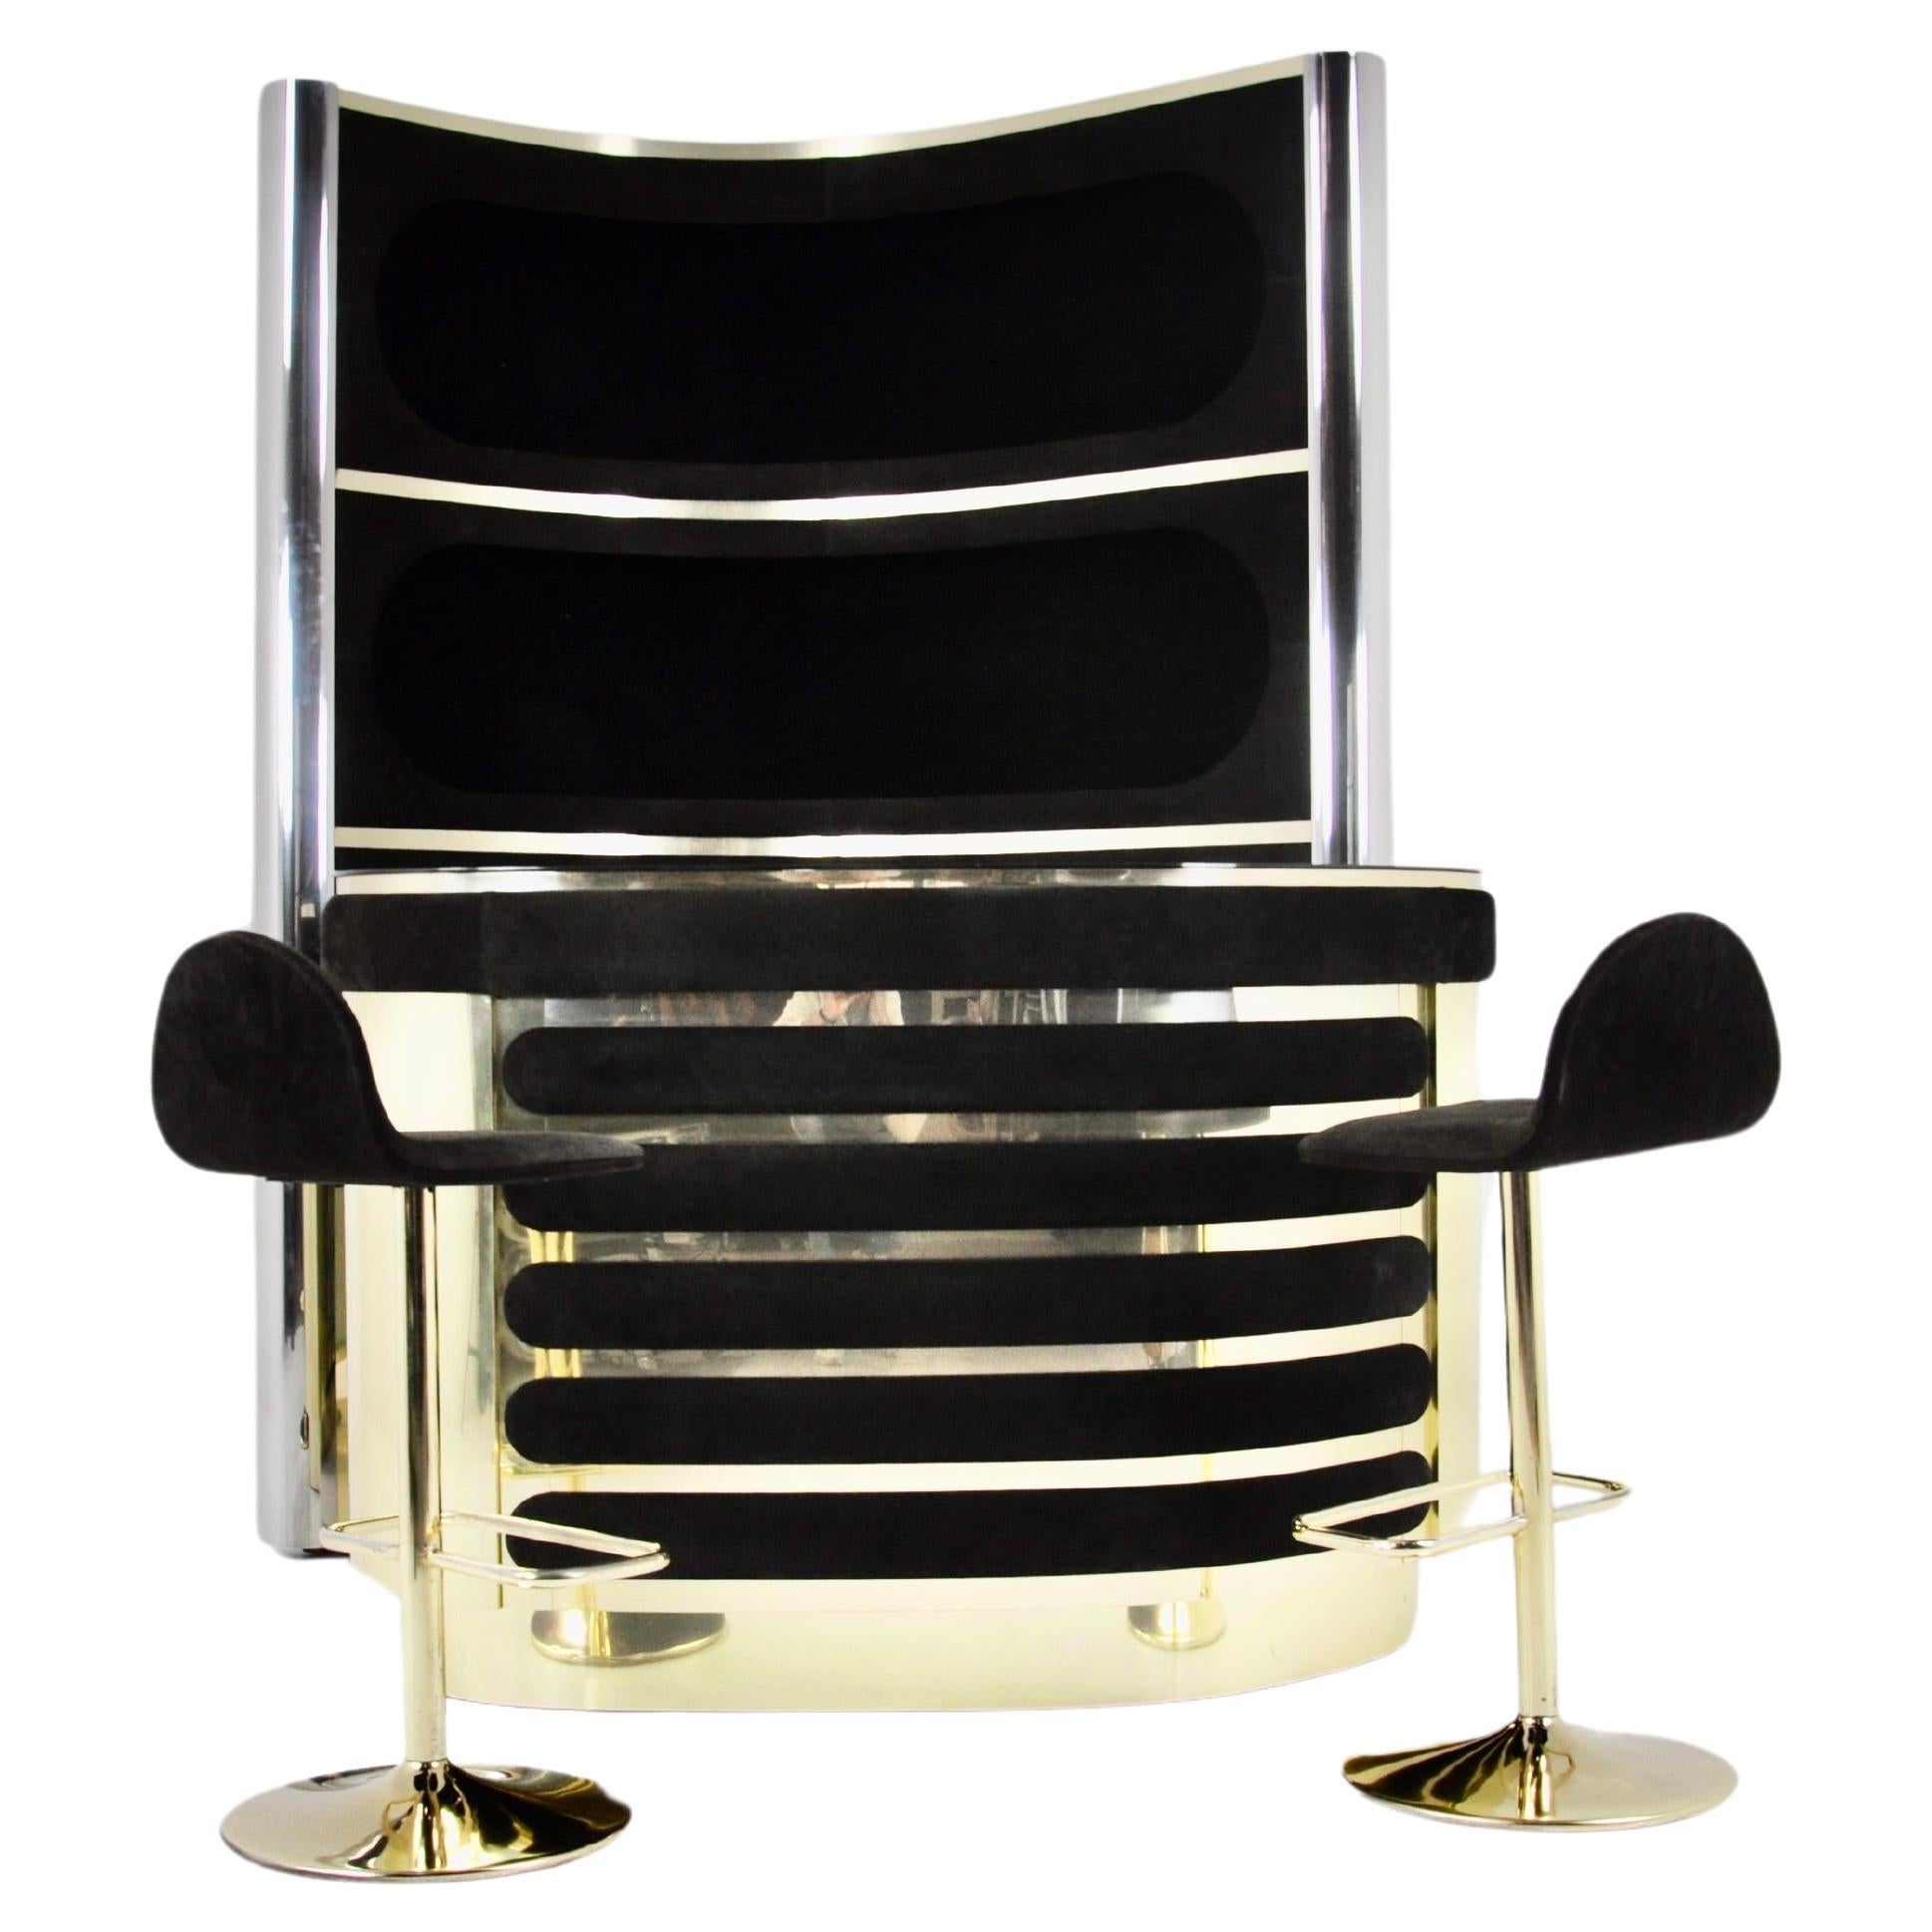 L'ensemble comprend un meuble avec 3 étagères éclairées en daim noir, métal chromé et laiton, l'un des côtés à l'arrière est en verre miroir.  Il comprend également un comptoir en daim et en laiton avec un plateau en miroir, un réfrigérateur et une